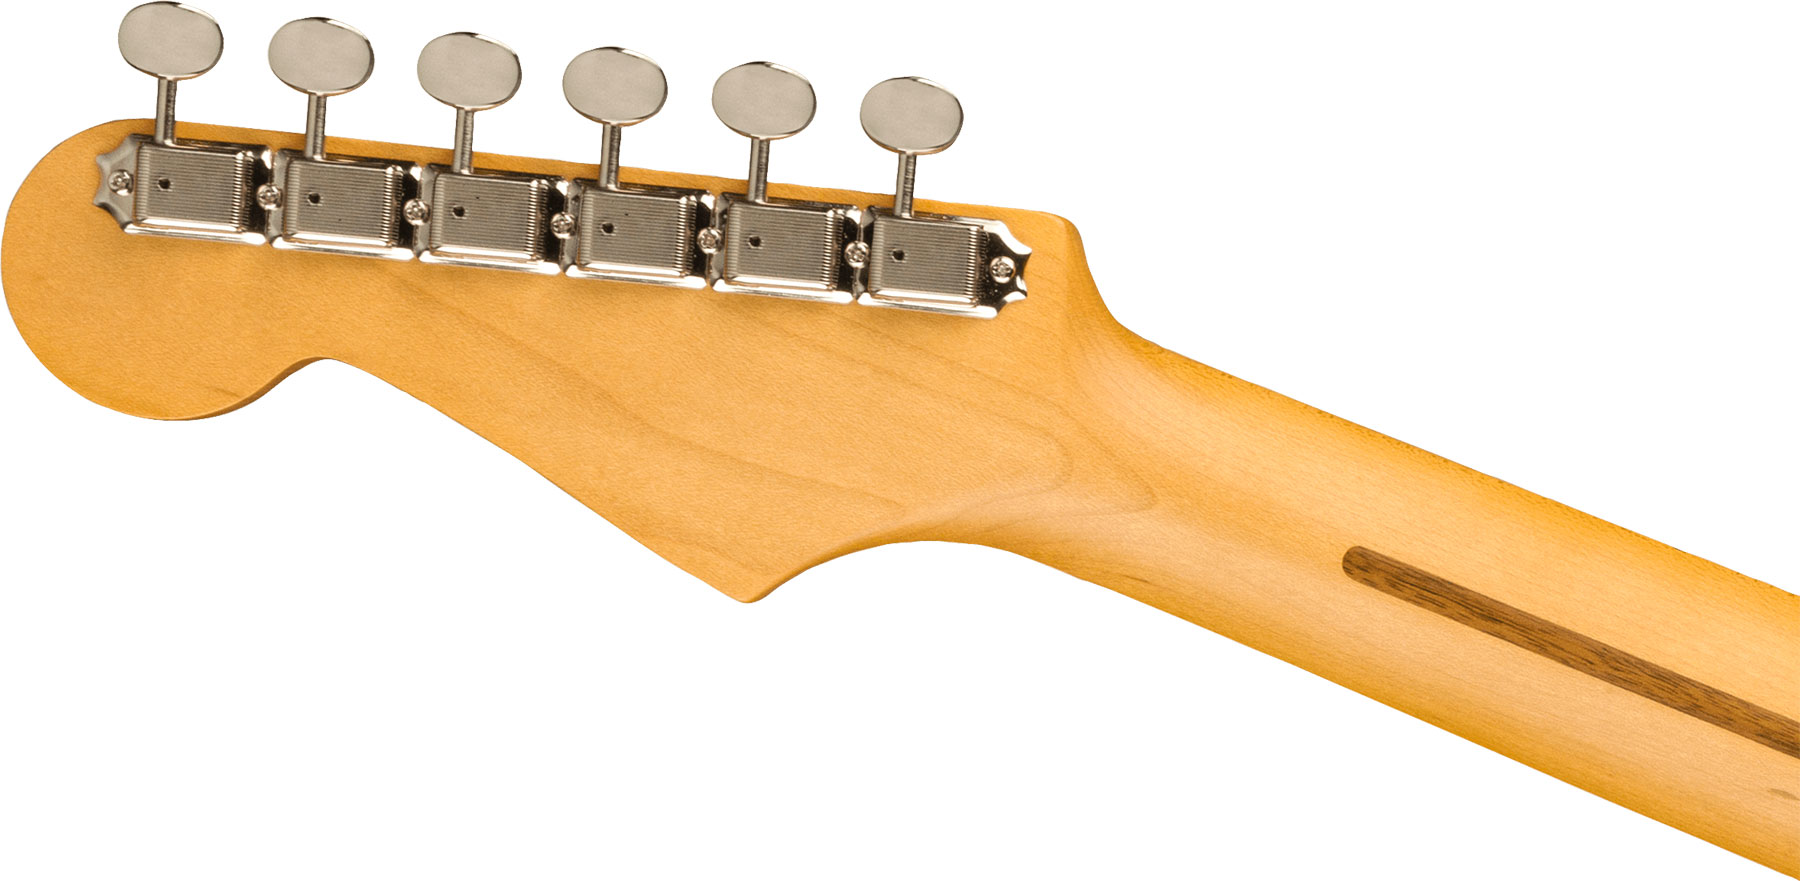 Fender Strat Jv Modified '50s Jap Hss Trem Mn - 2-color Sunburst - Str shape electric guitar - Variation 3